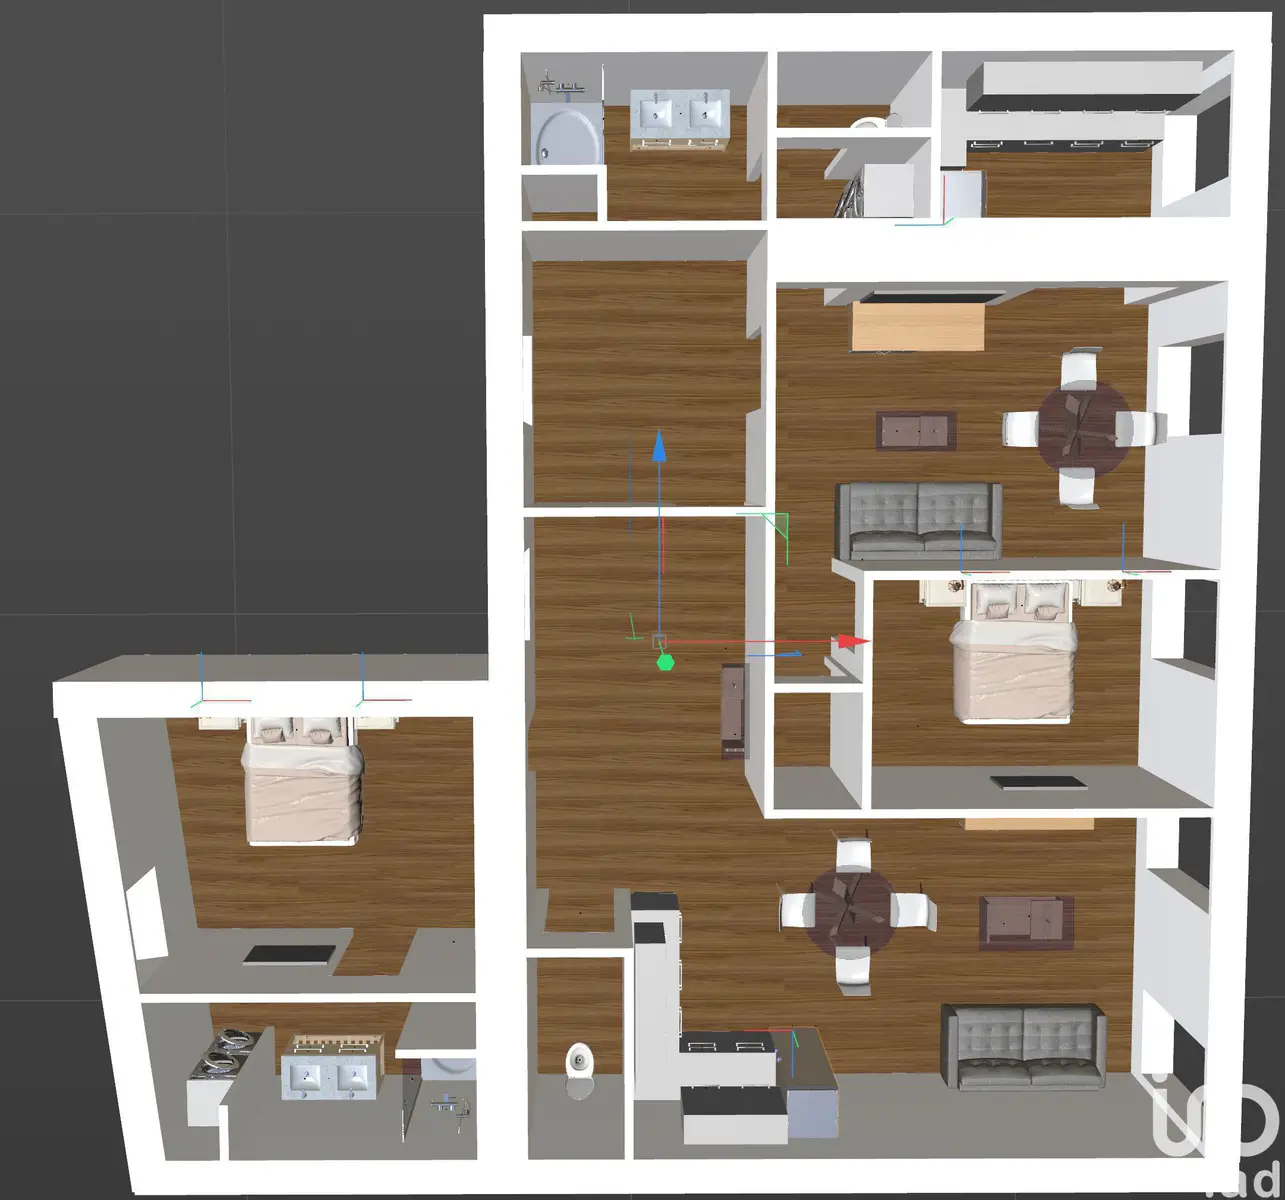 Vente appartement 2 pièces 57 m2